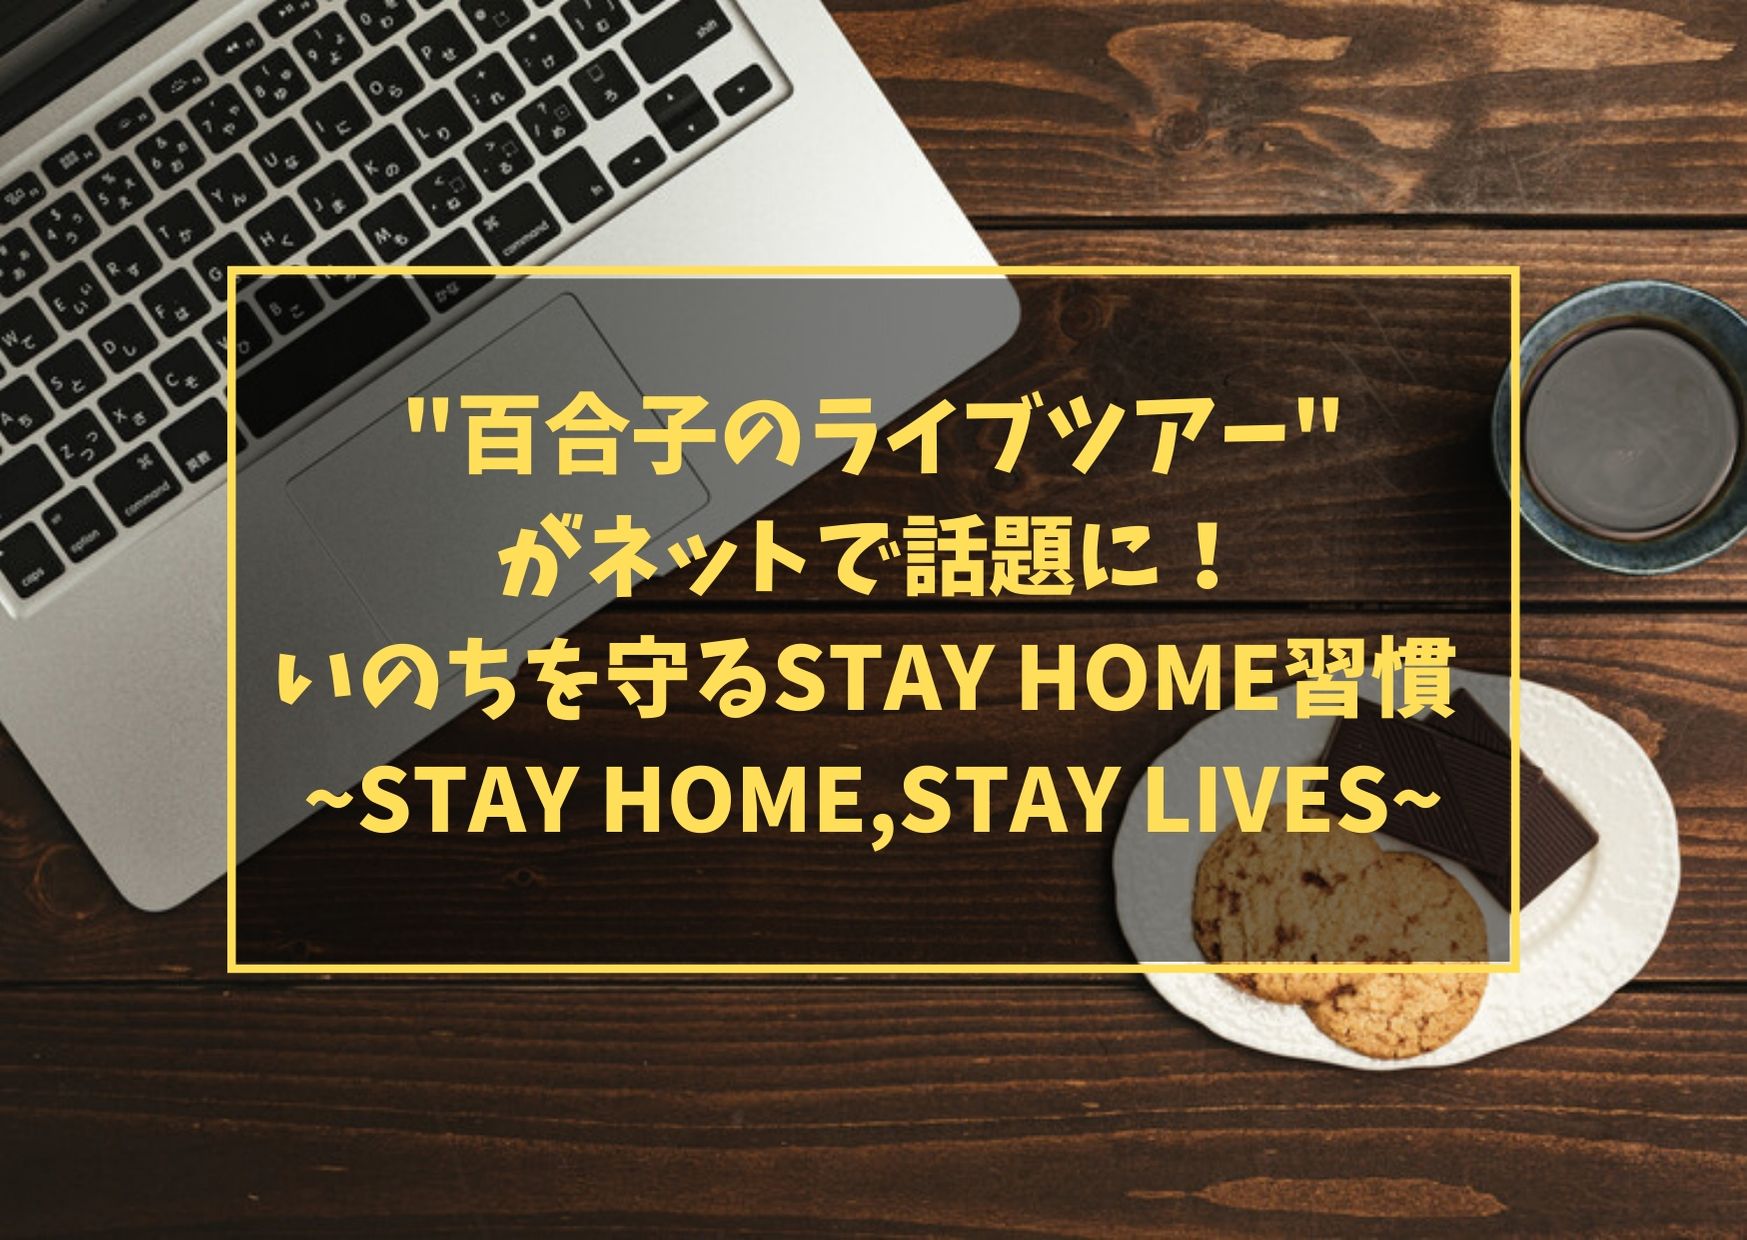 "百合子のライブツアー"がネットで話題に！いのちを守るSTAY HOME習慣 ~STAY HOME,STAY LIVES~